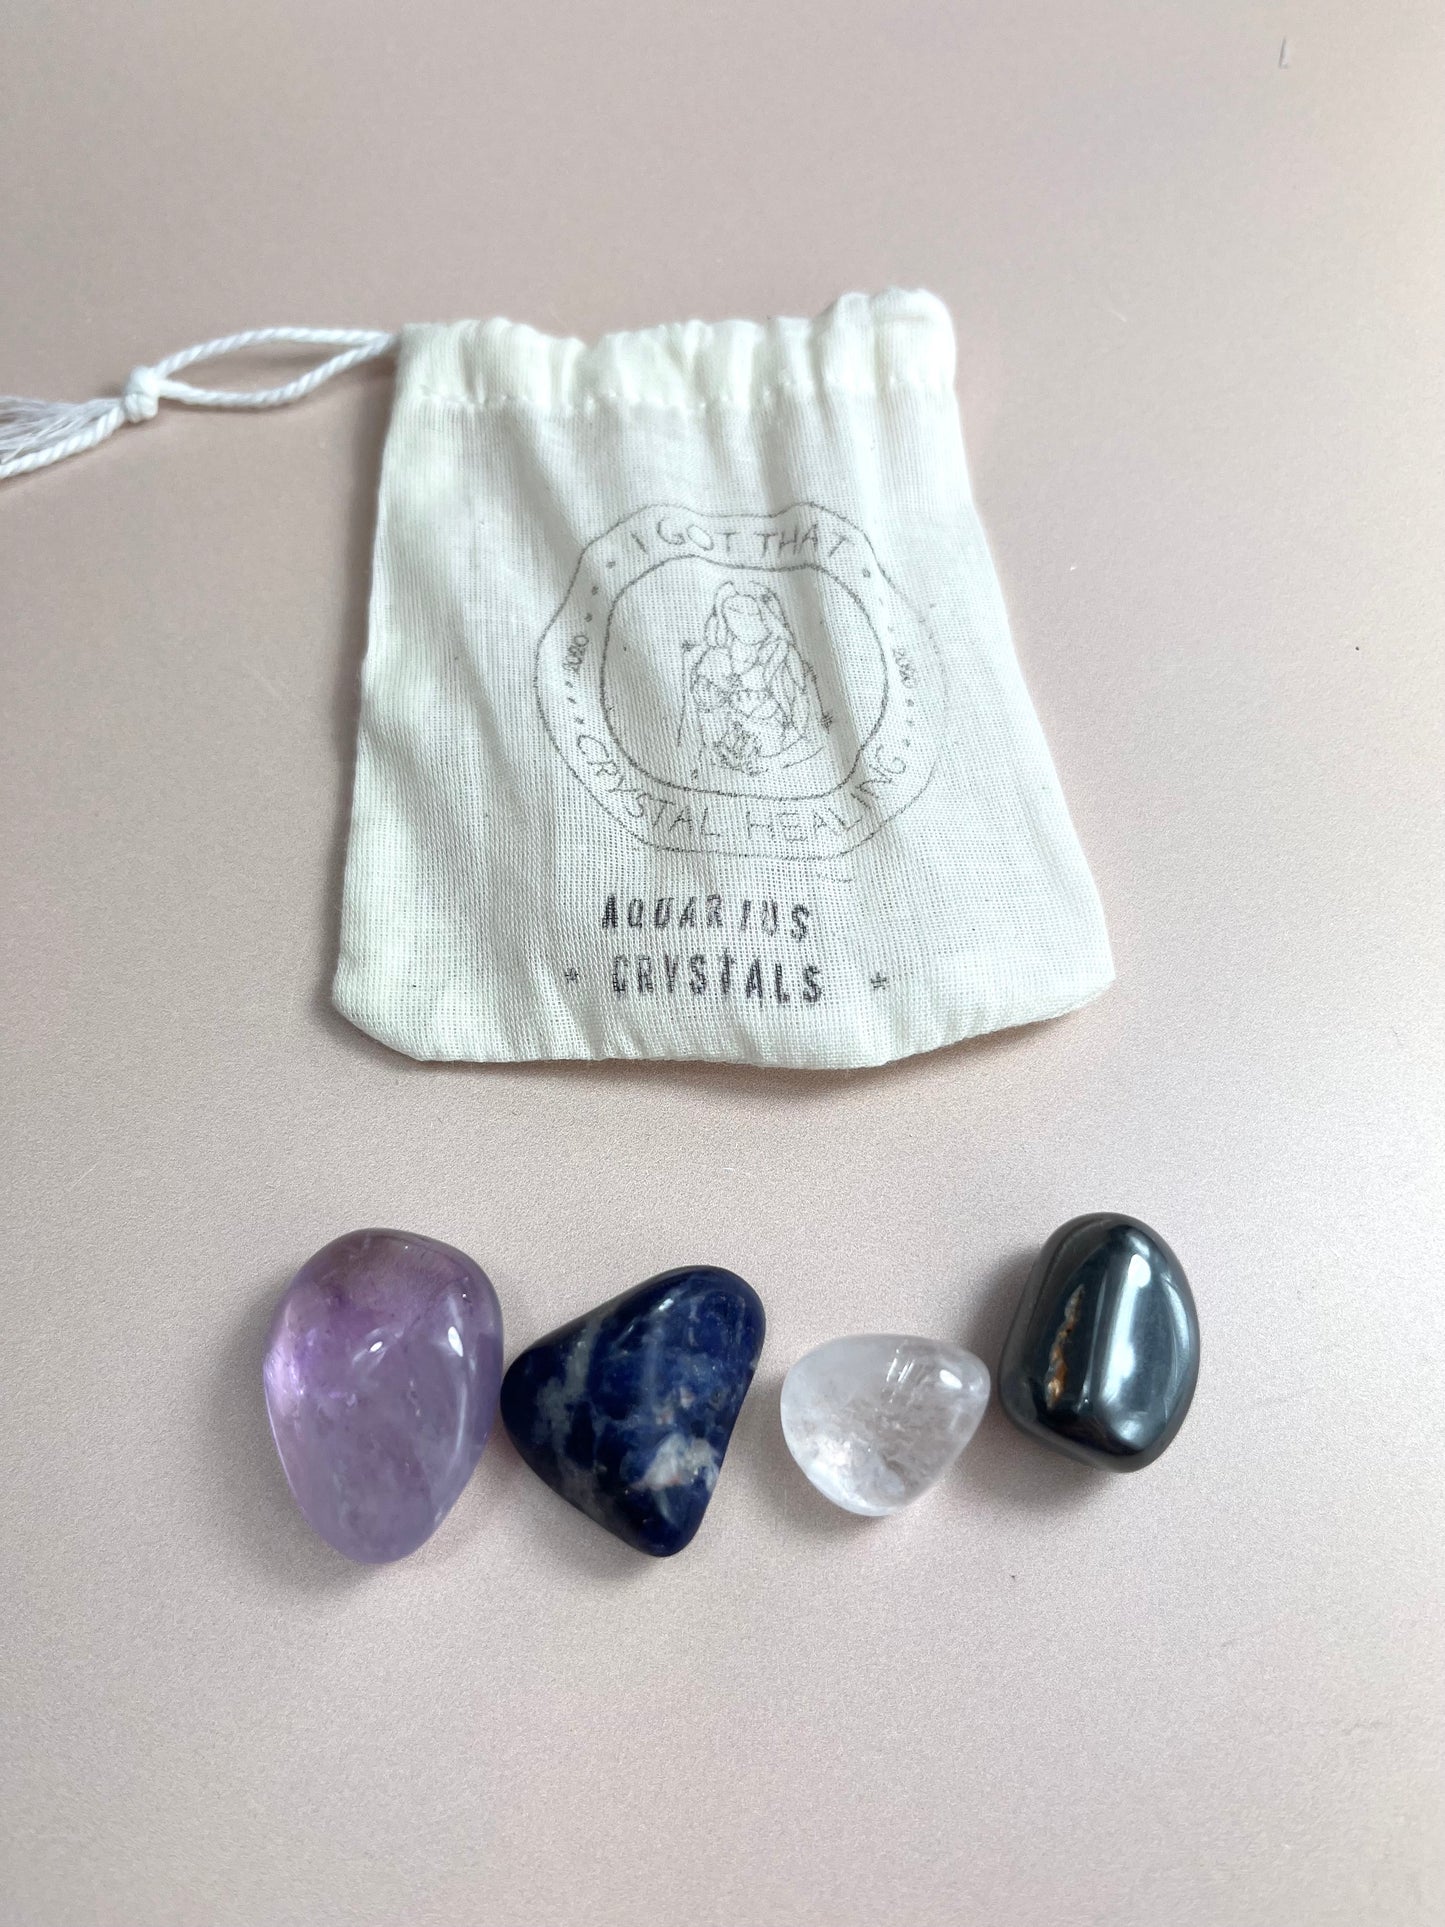 Crystals for Aquarius